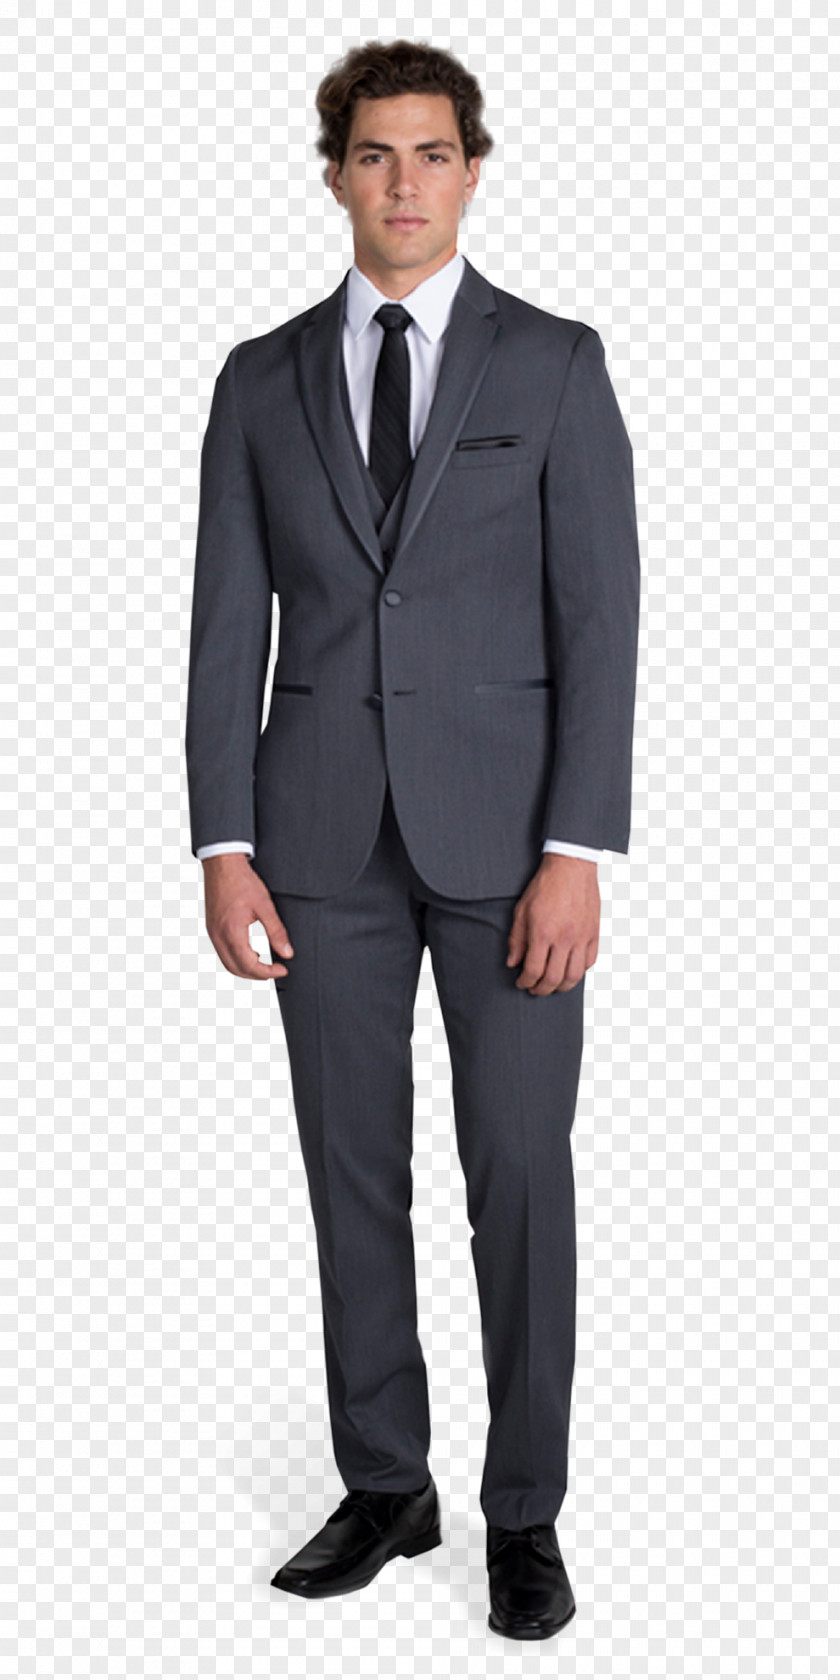 Gray Suit Lapel Clothing Tuxedo Button PNG